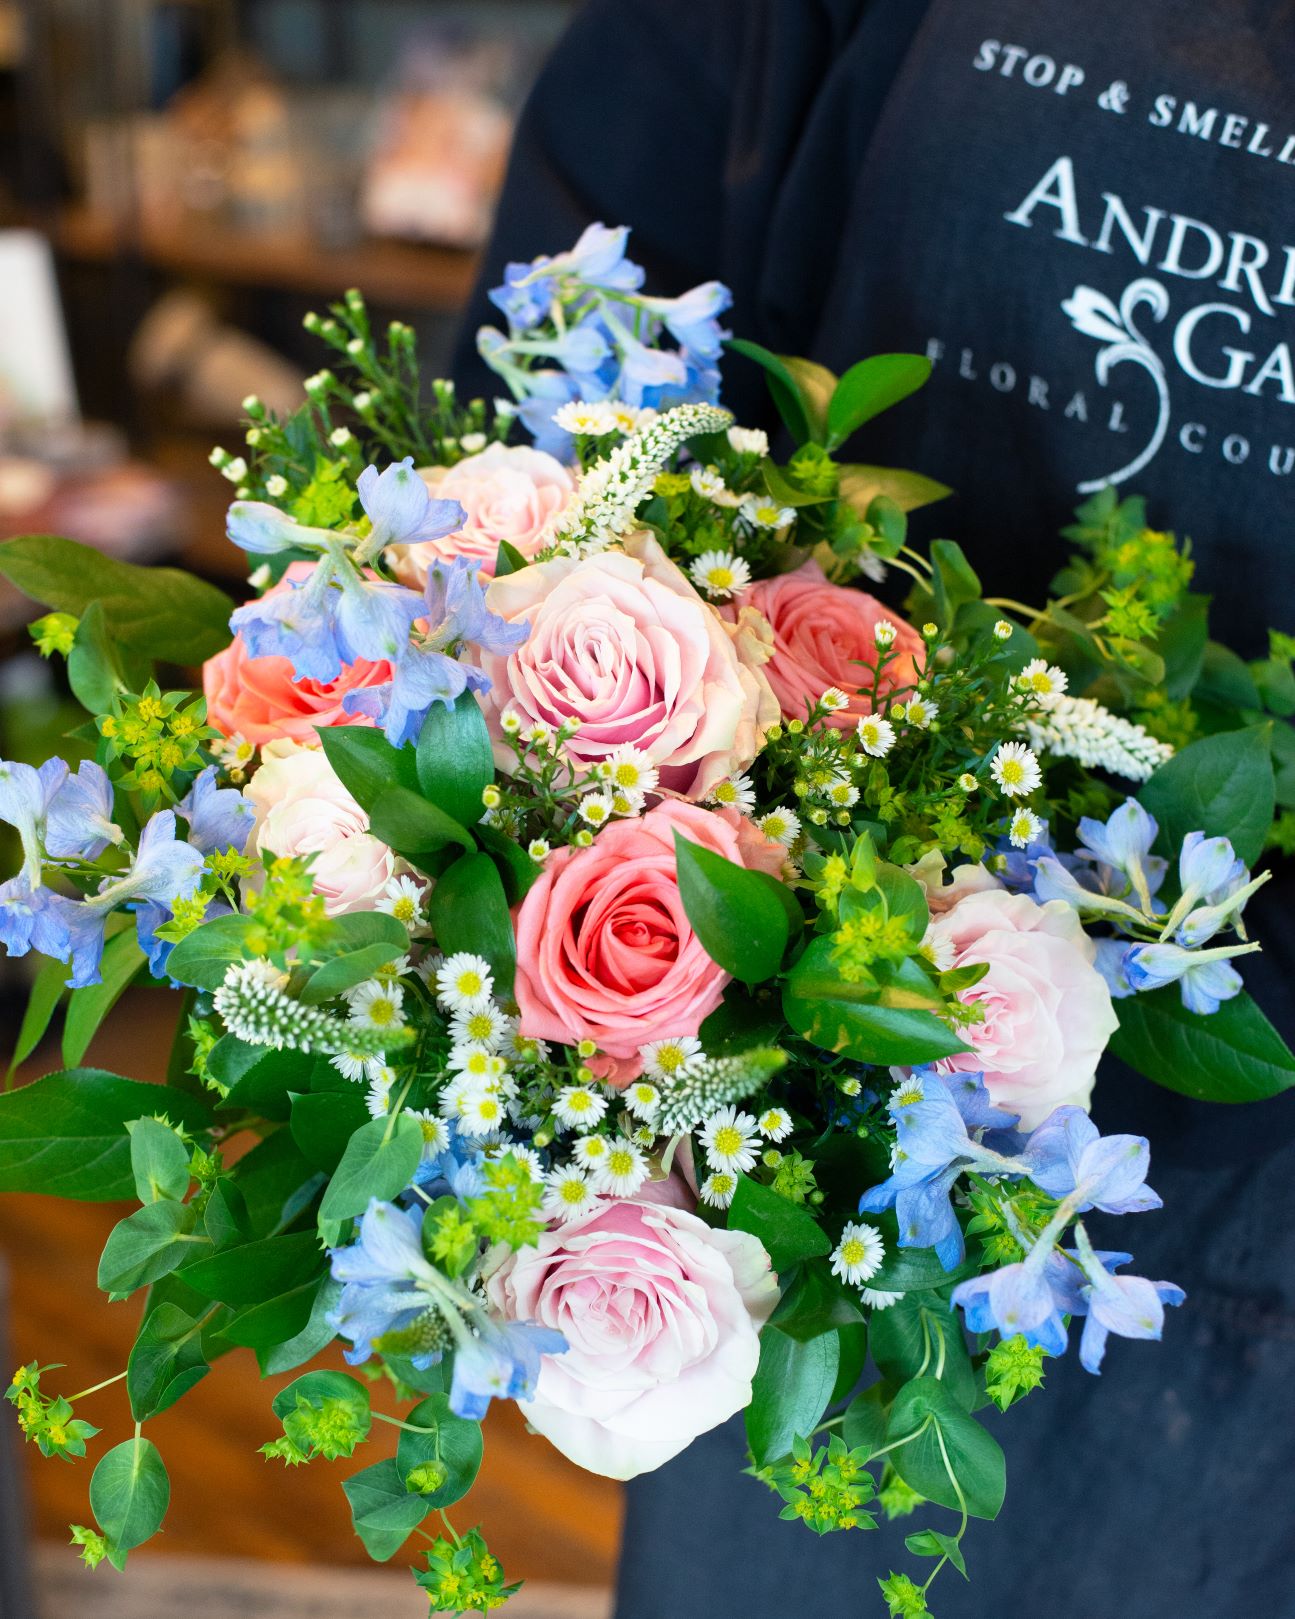 AG Design Class-Handtied Parisian-Style Bouquet